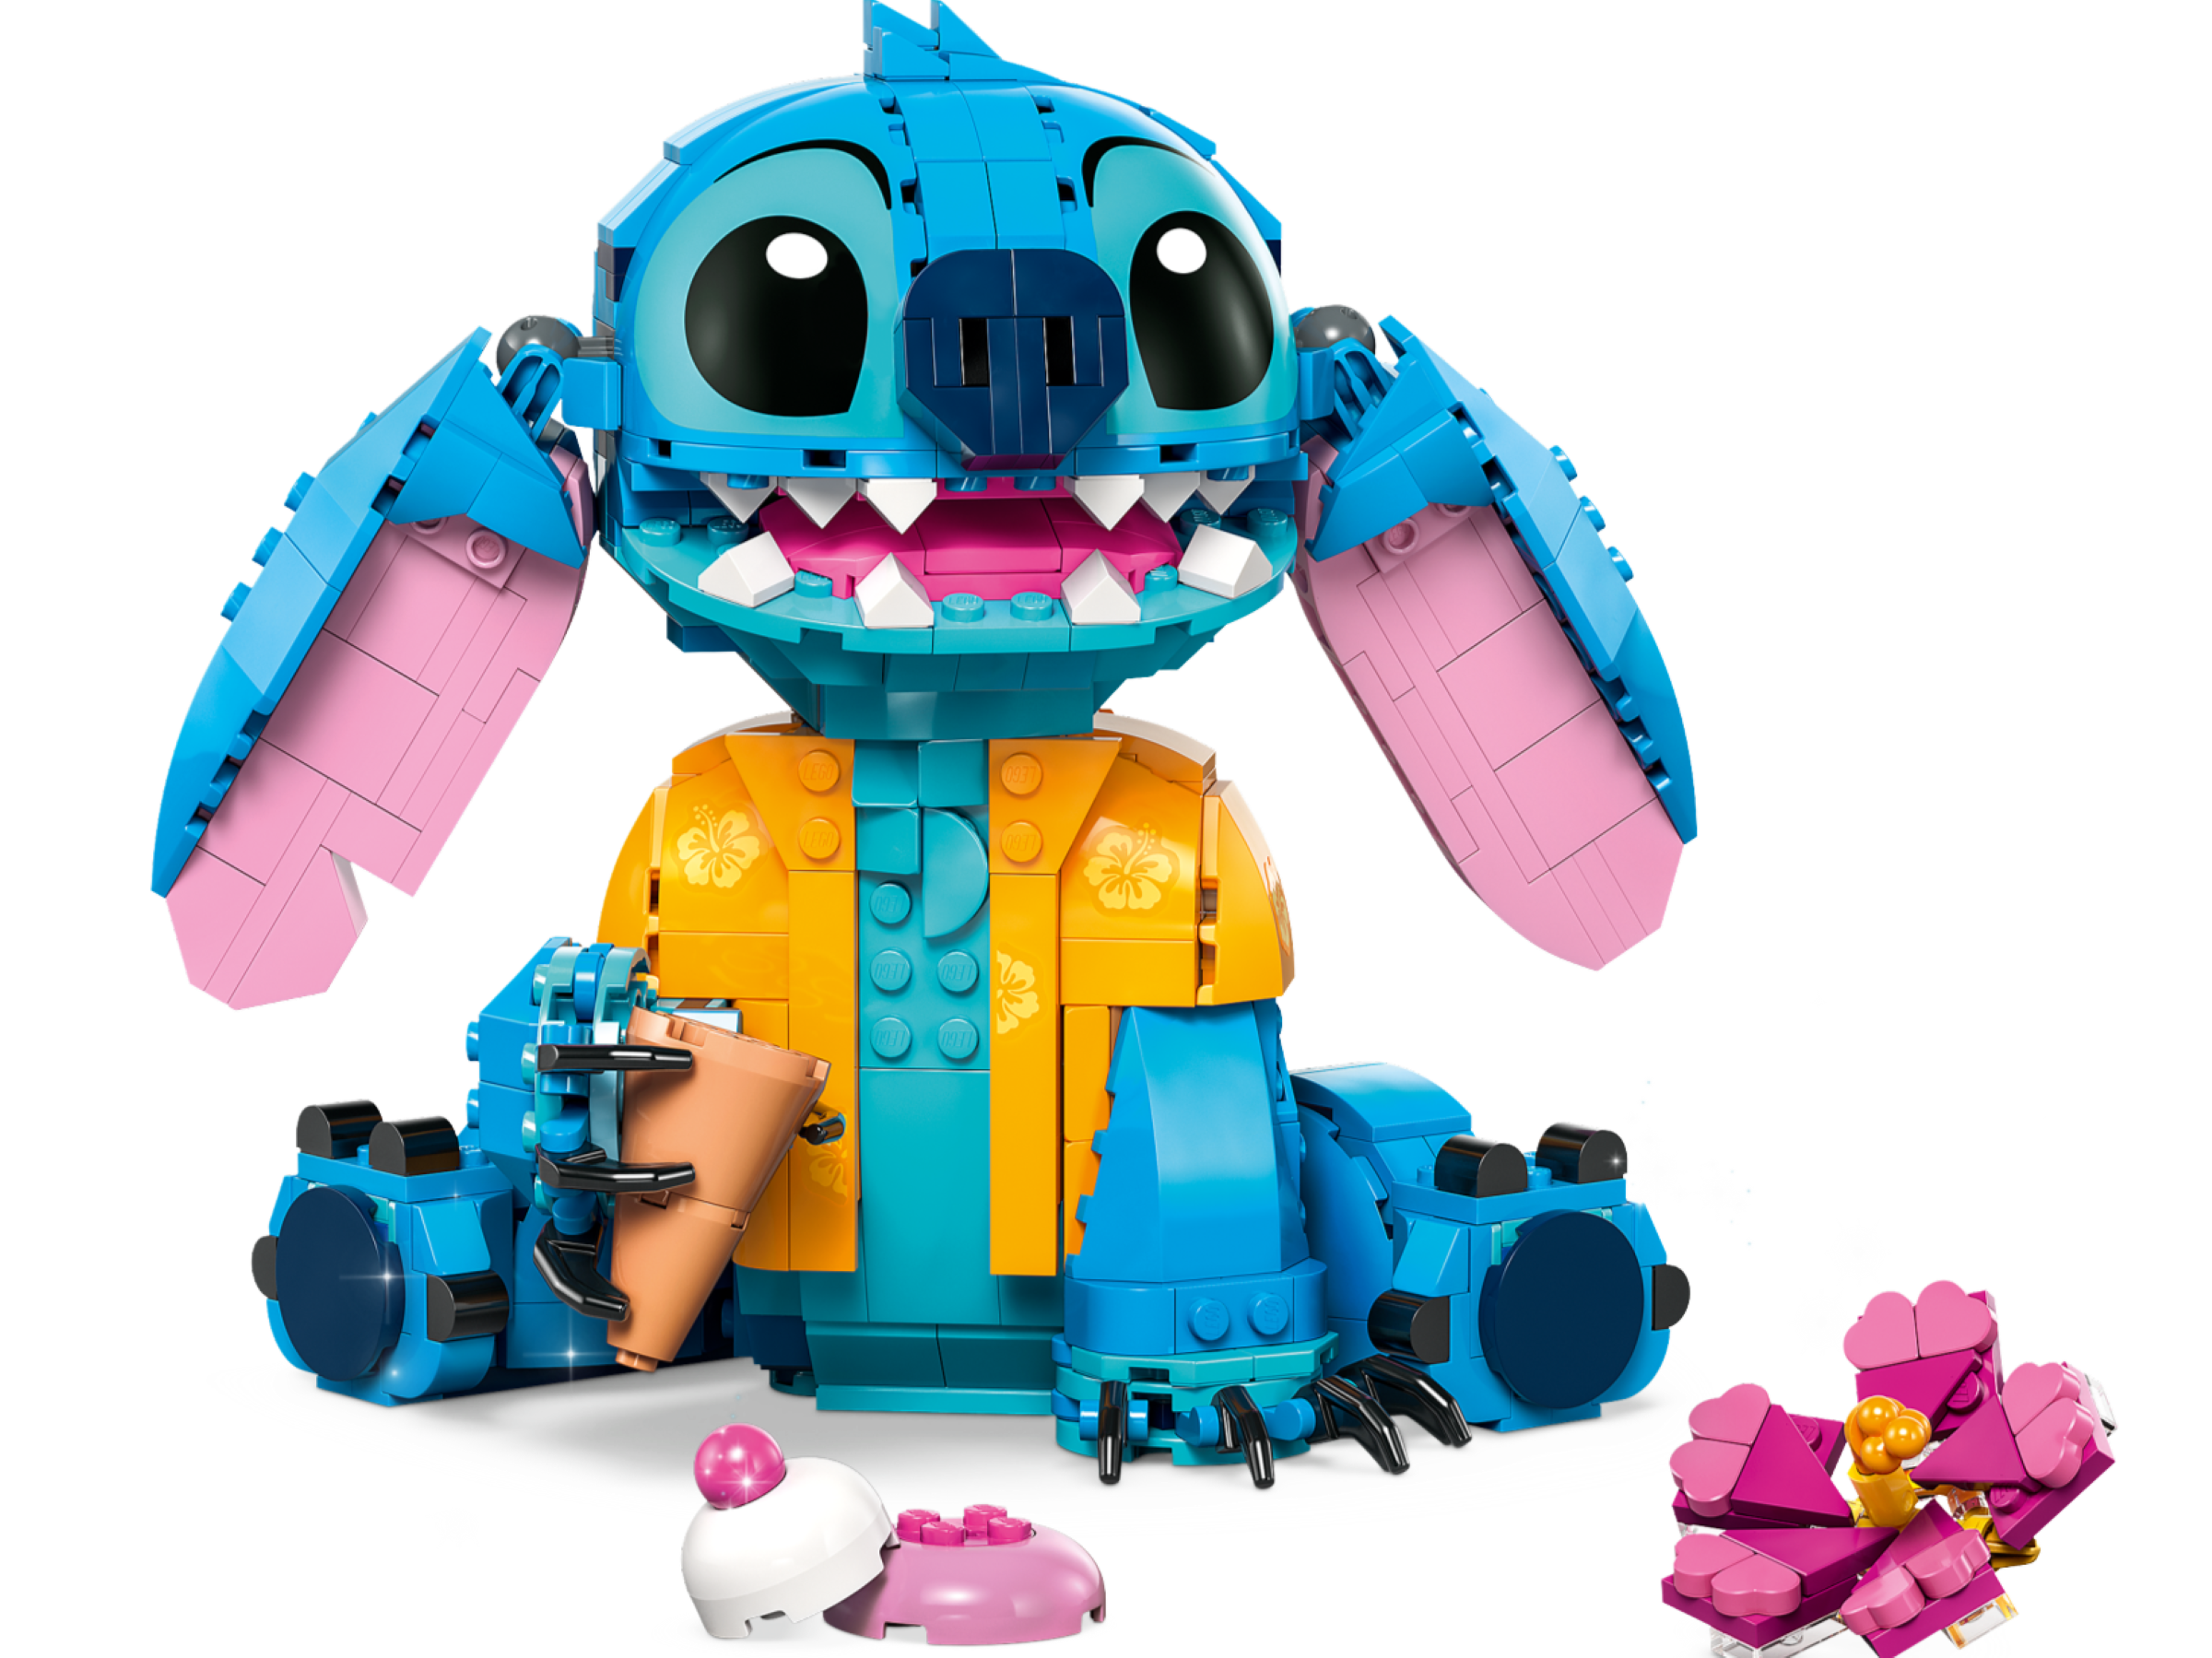 Lego Disney Stitch 43249 : où l'acheter